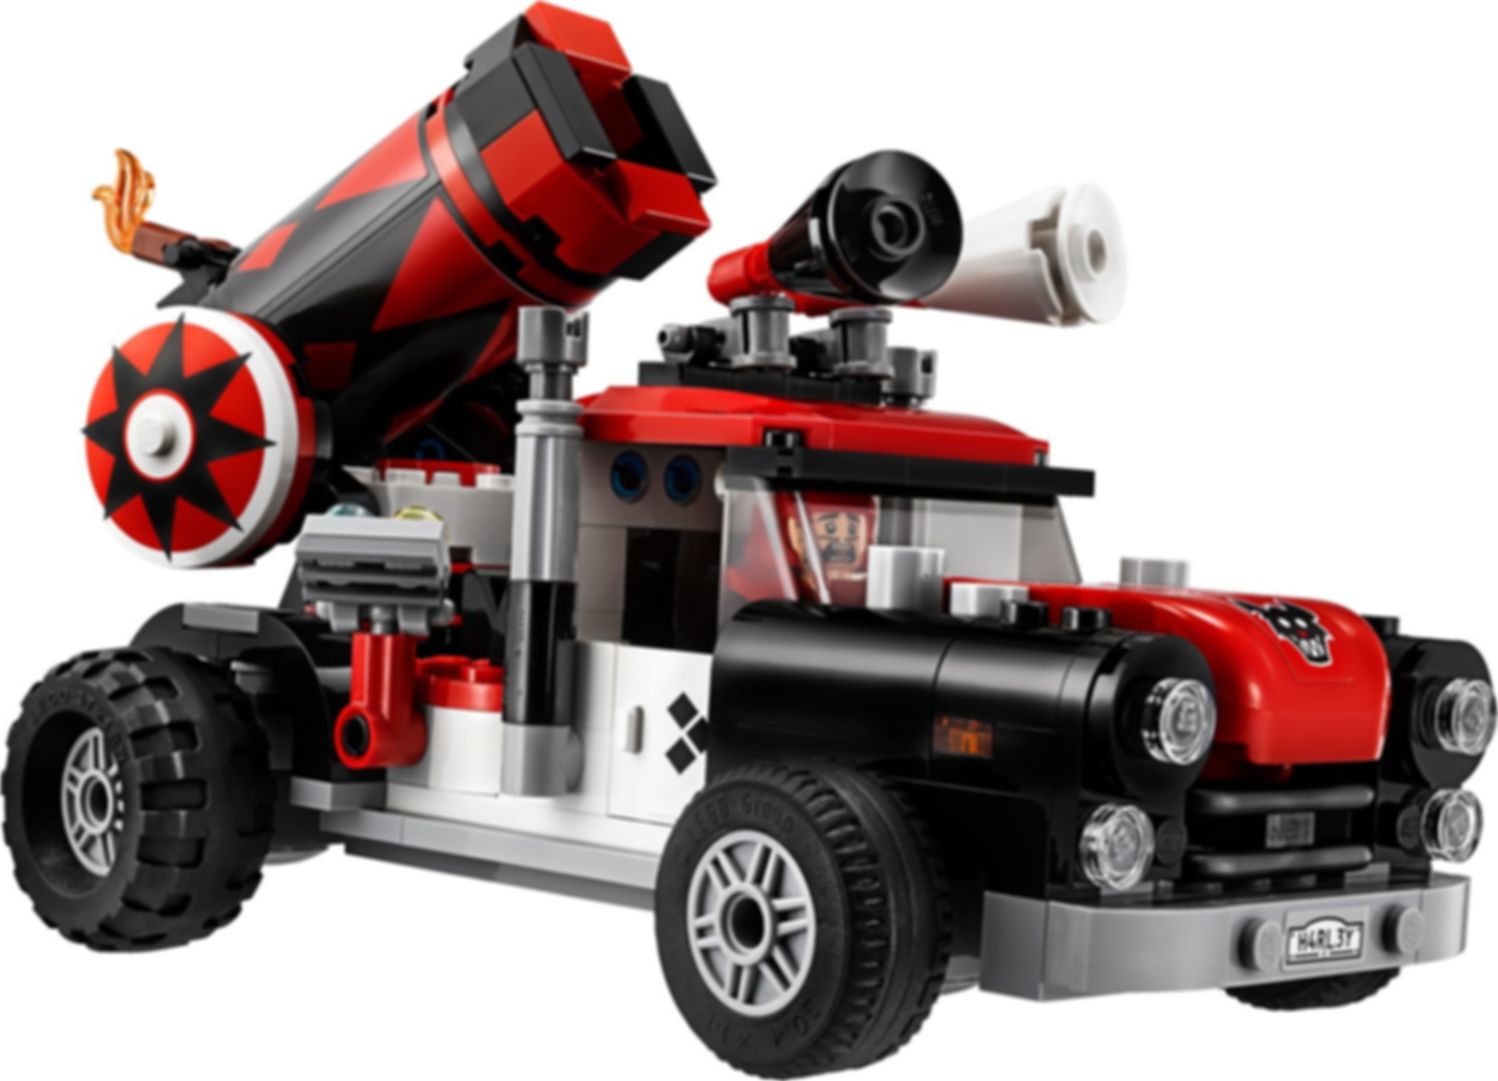 LEGO® Batman Movie Harley Quinn™ kanonskogelaanval componenten